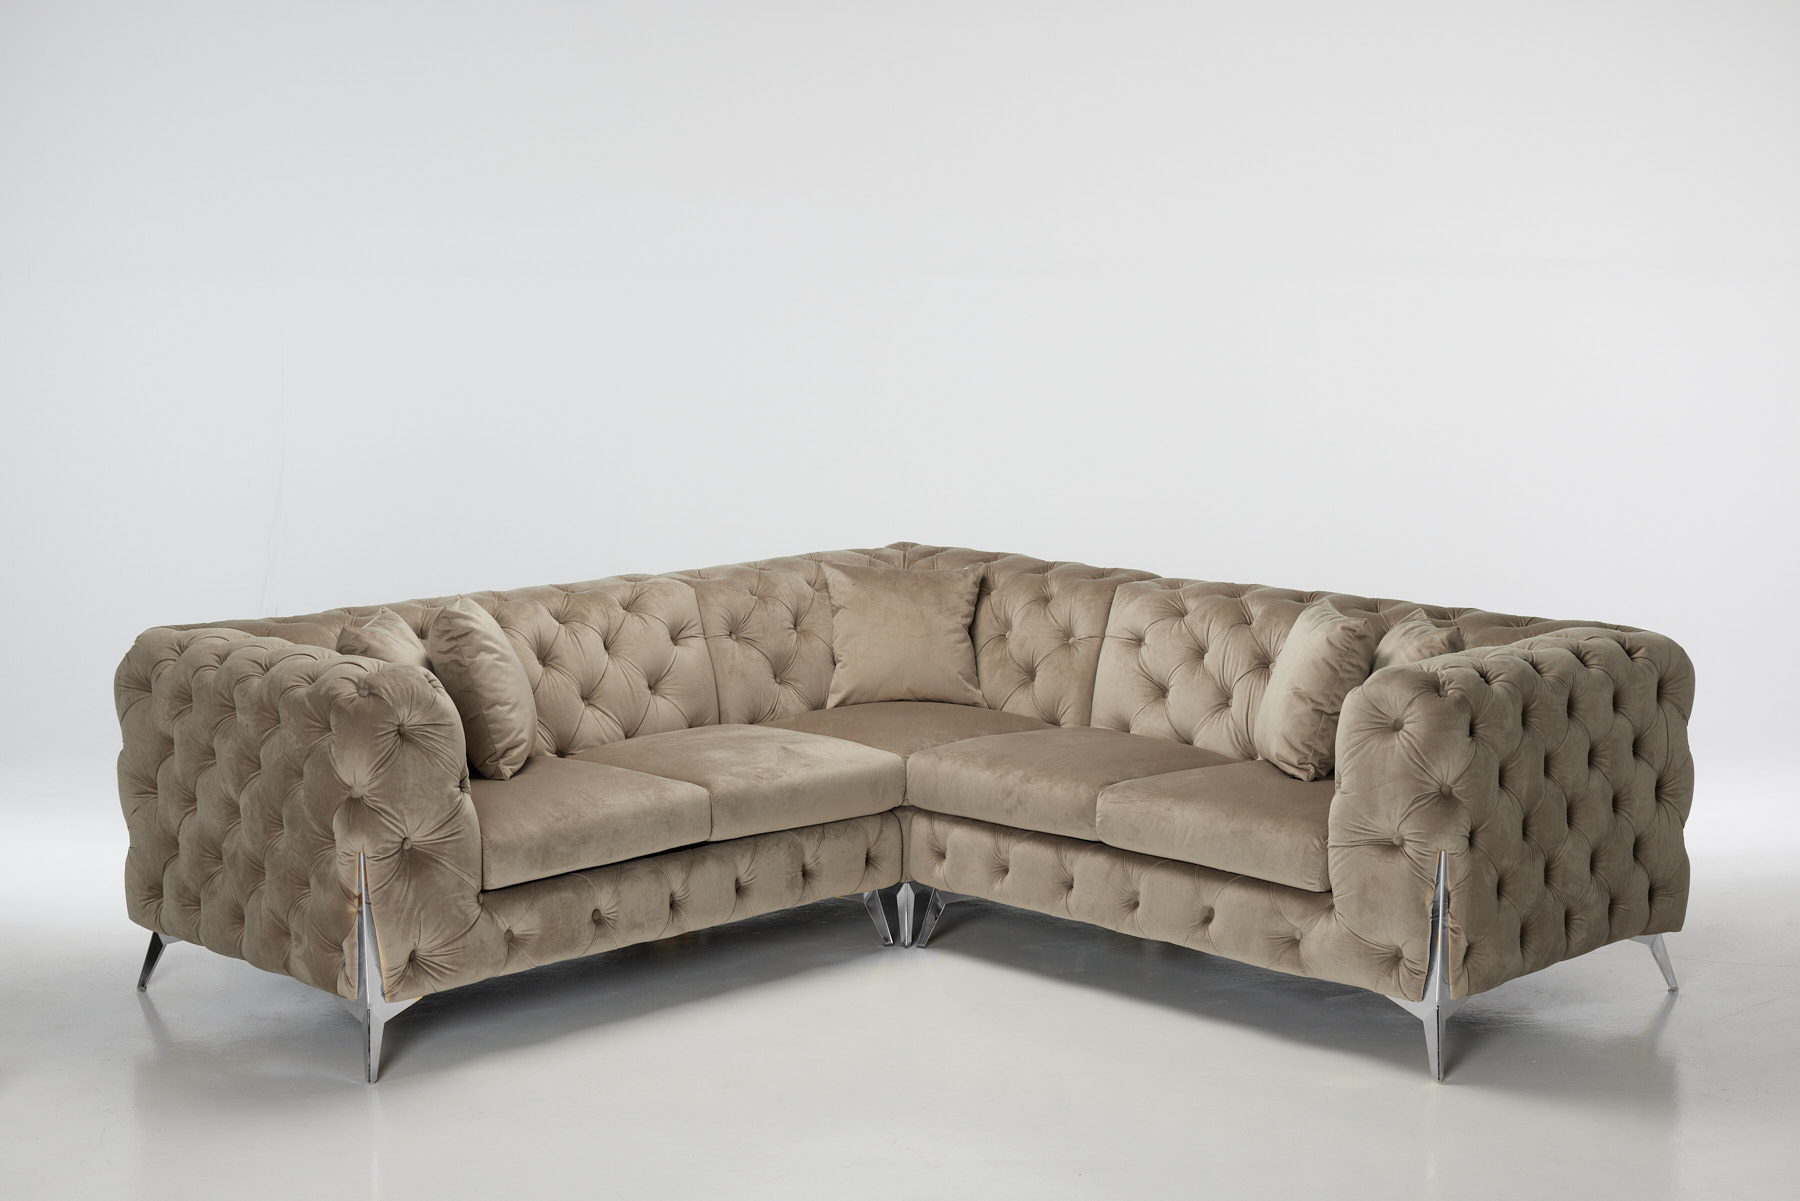 Annabelle - Luxury Chesterfield Velvet Corner Sofa, Mink with Silver Legs